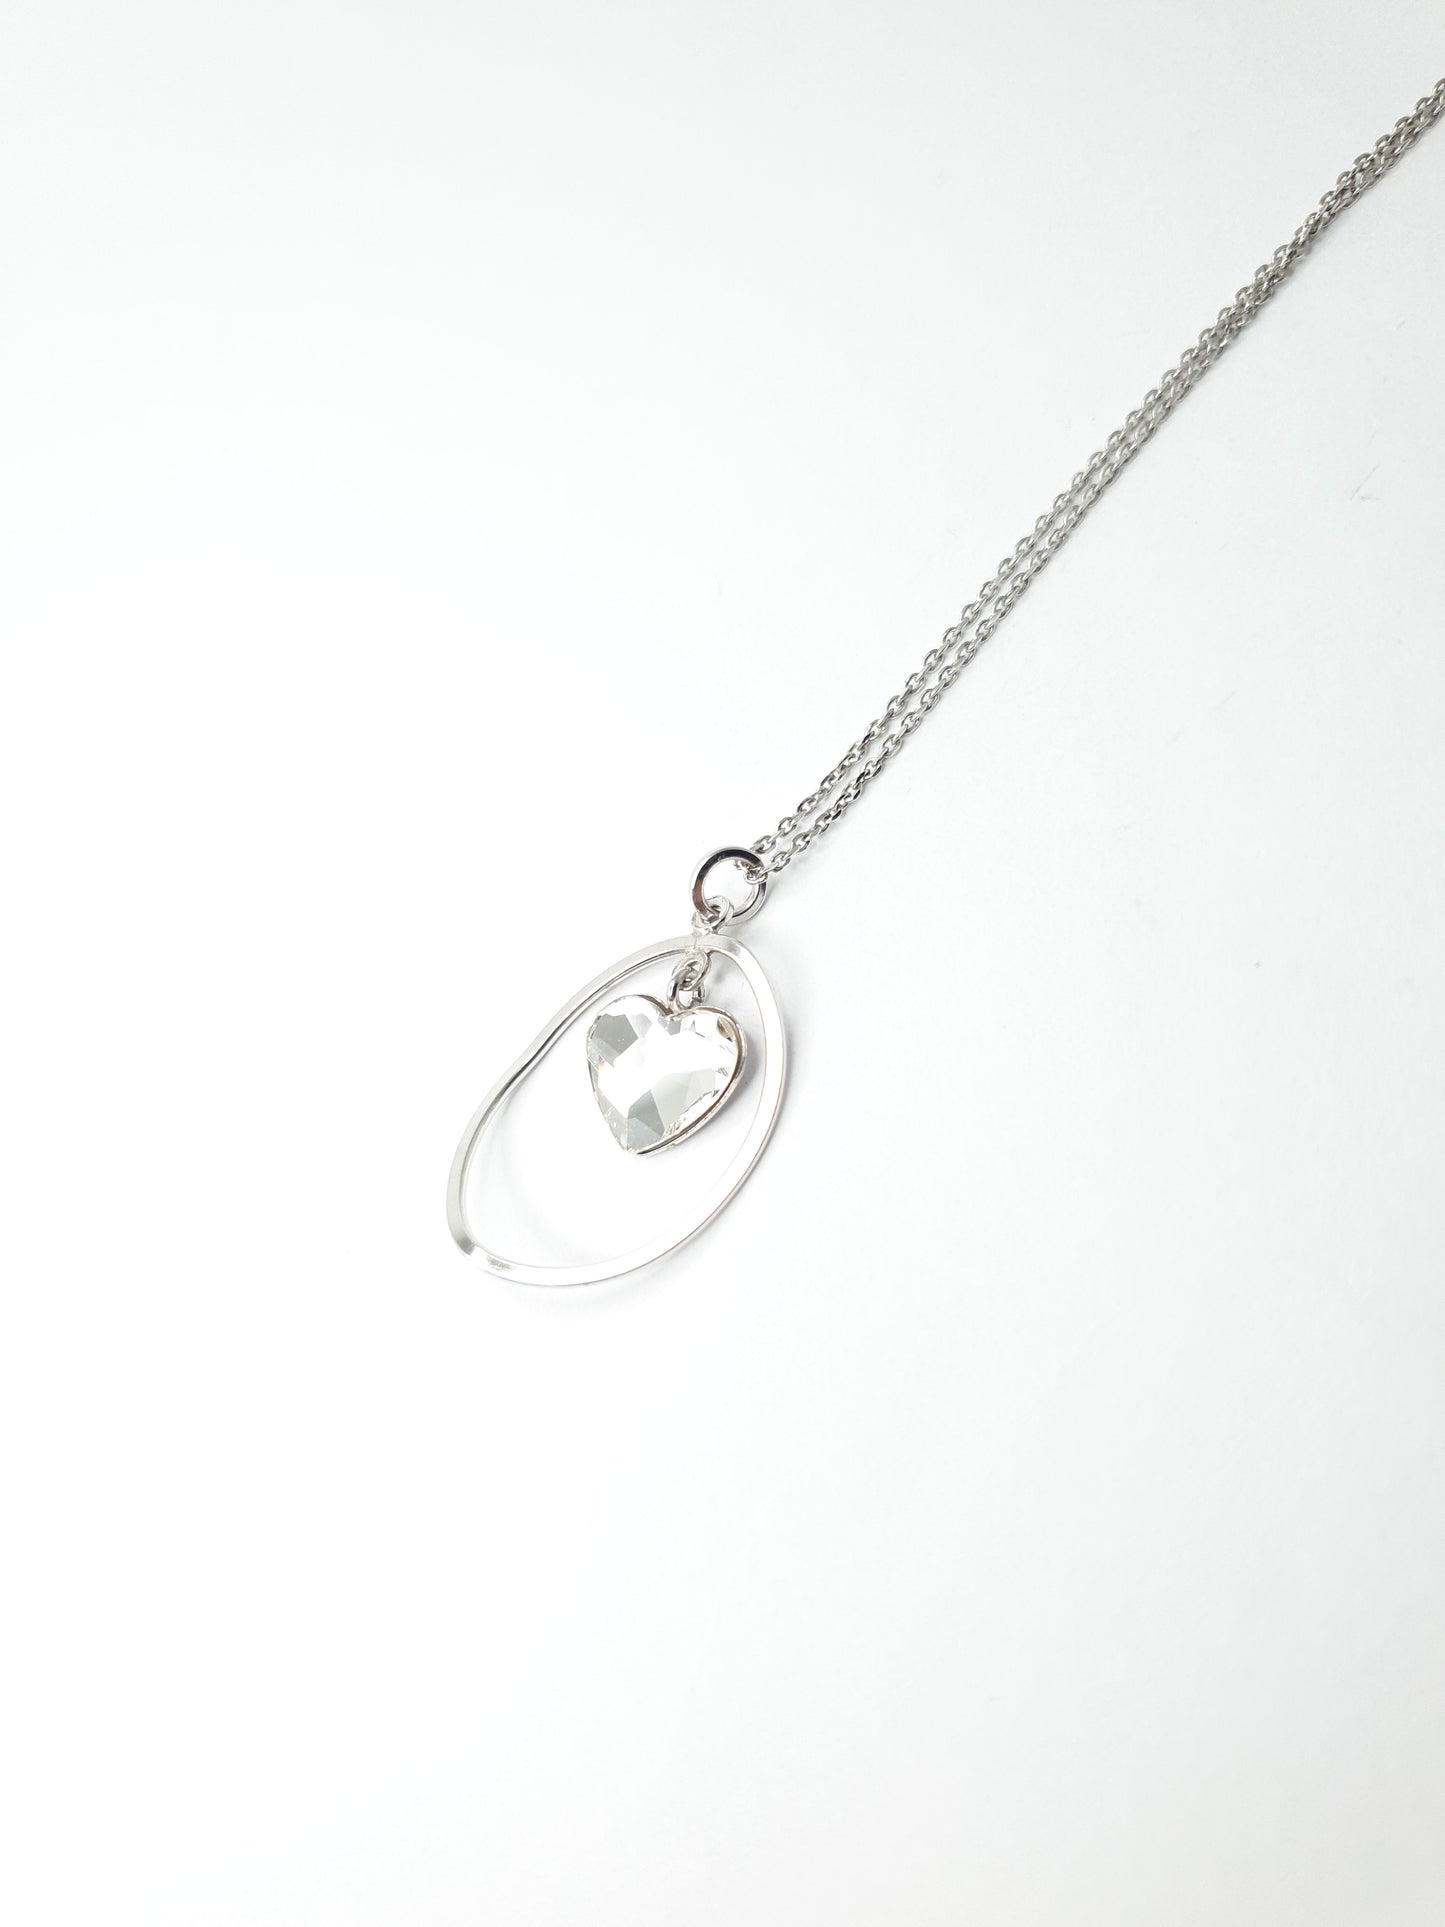 Schöne 925 Silberkette mit glänzendem Herzanhänger aus Swarovski Stein - Inbegriff von Eleganz und Stil